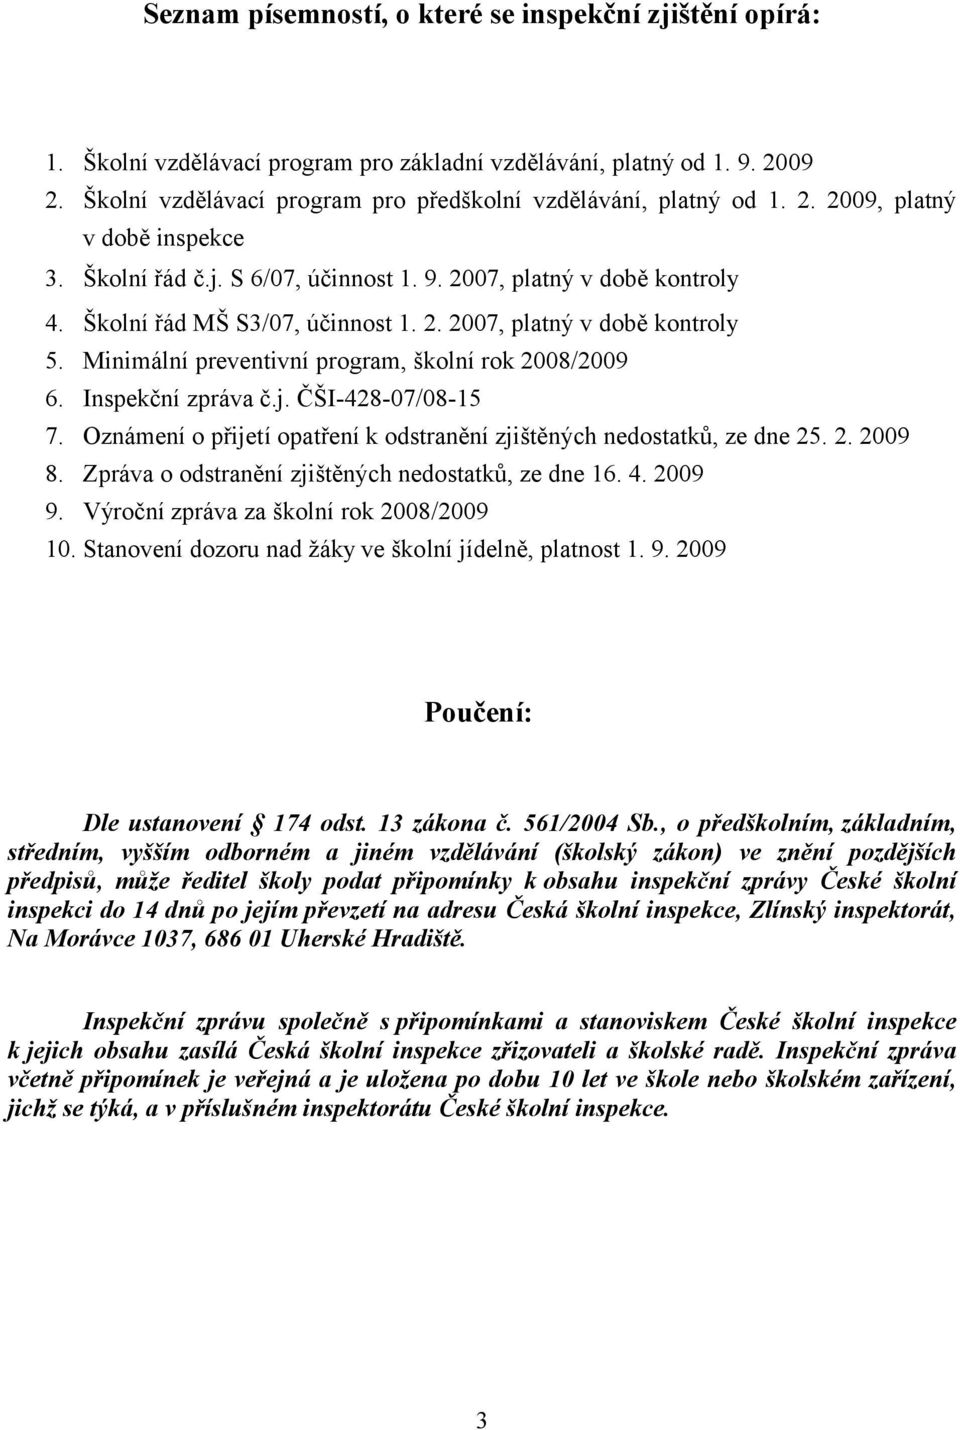 Minimální preventivní program, školní rok 2008/2009 6. Inspekční zpráva č.j. ČŠI-428-07/08-15 7. Oznámení o přijetí opatření k odstranění zjištěných nedostatků, ze dne 25. 2. 2009 8.